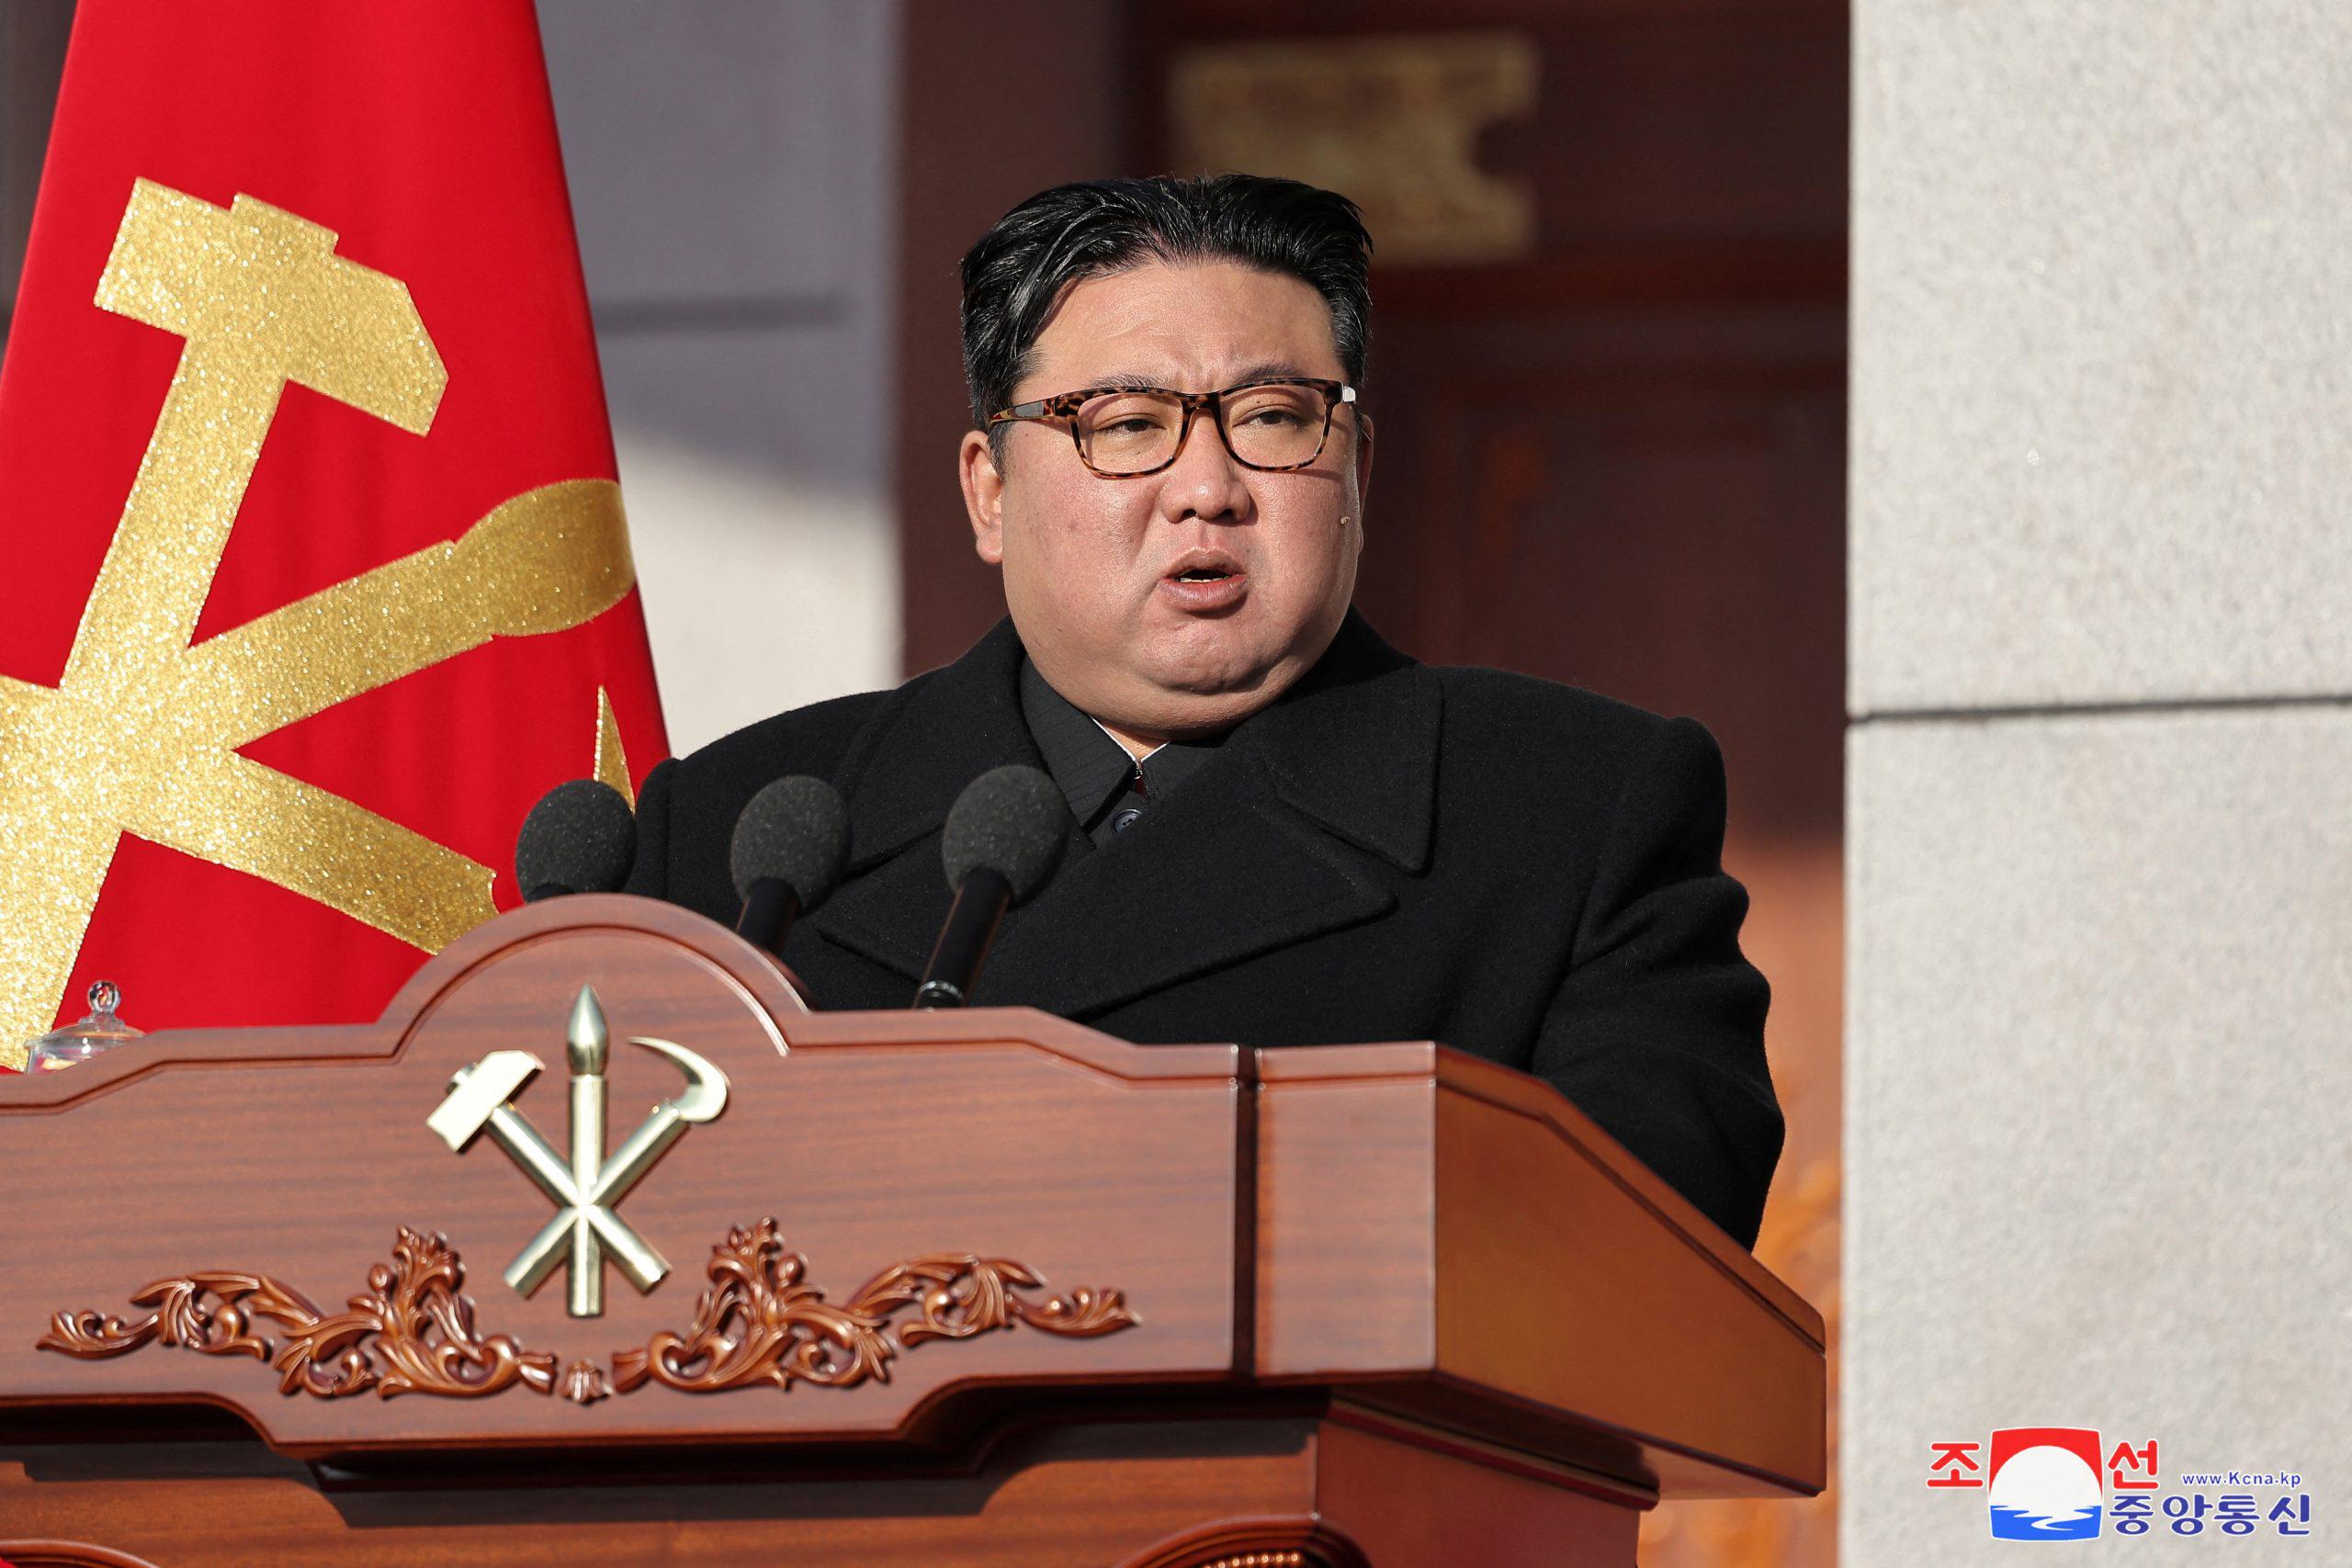 رهبر کره شمالی: رسالت مقدس نسل جدید ساخت بهشت برای مردم کشورمان است   خبرگزاری بین المللی